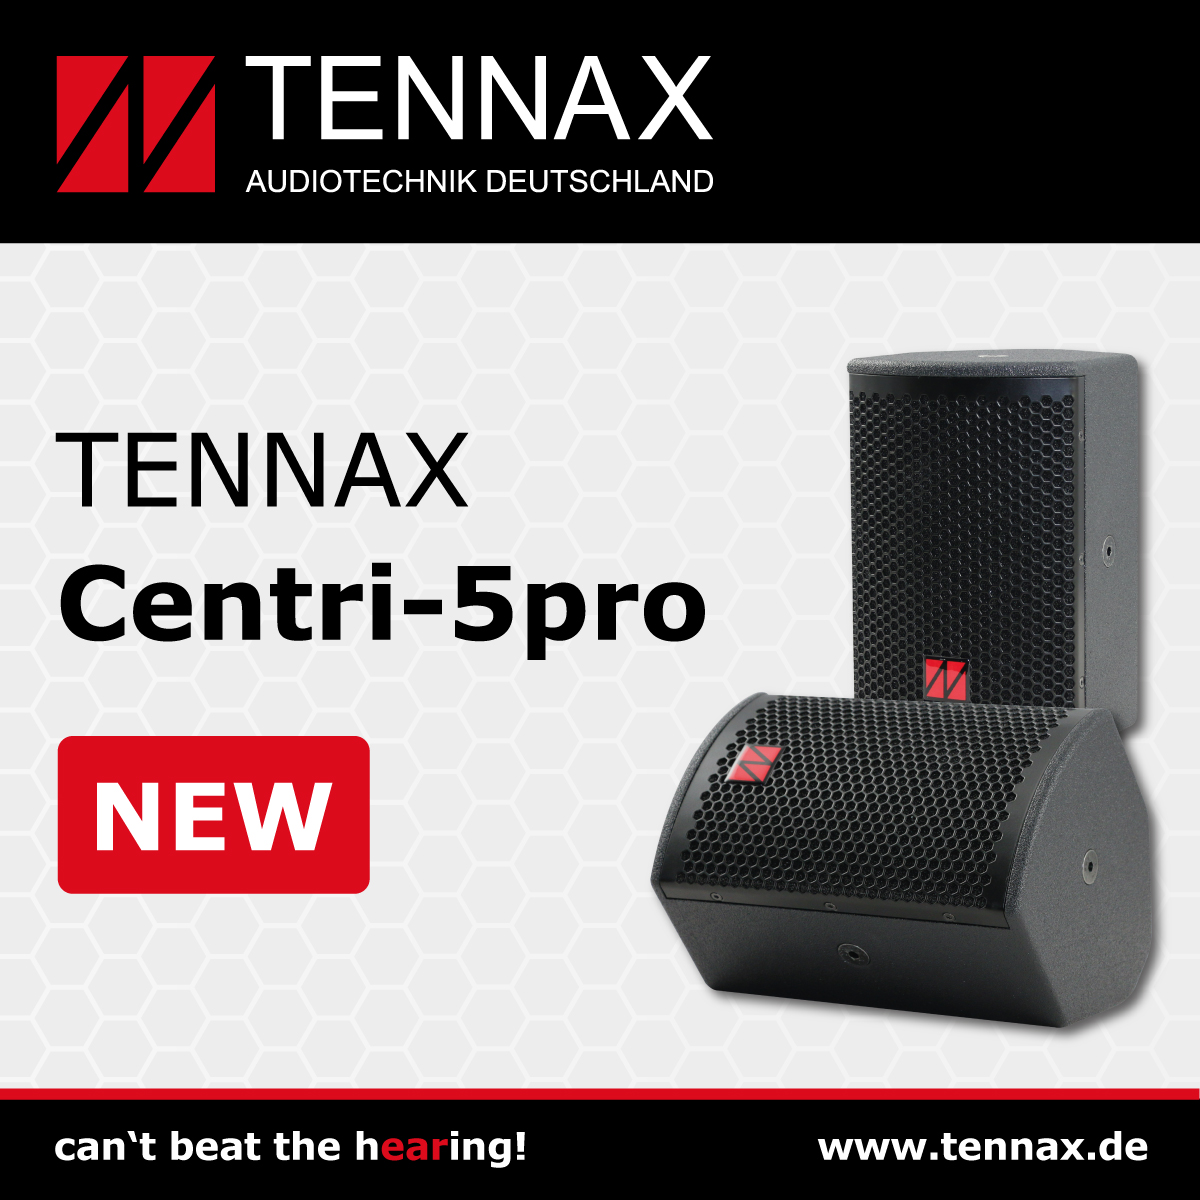 TENNAX erweitert die Produktpalette mit Centri-5pro